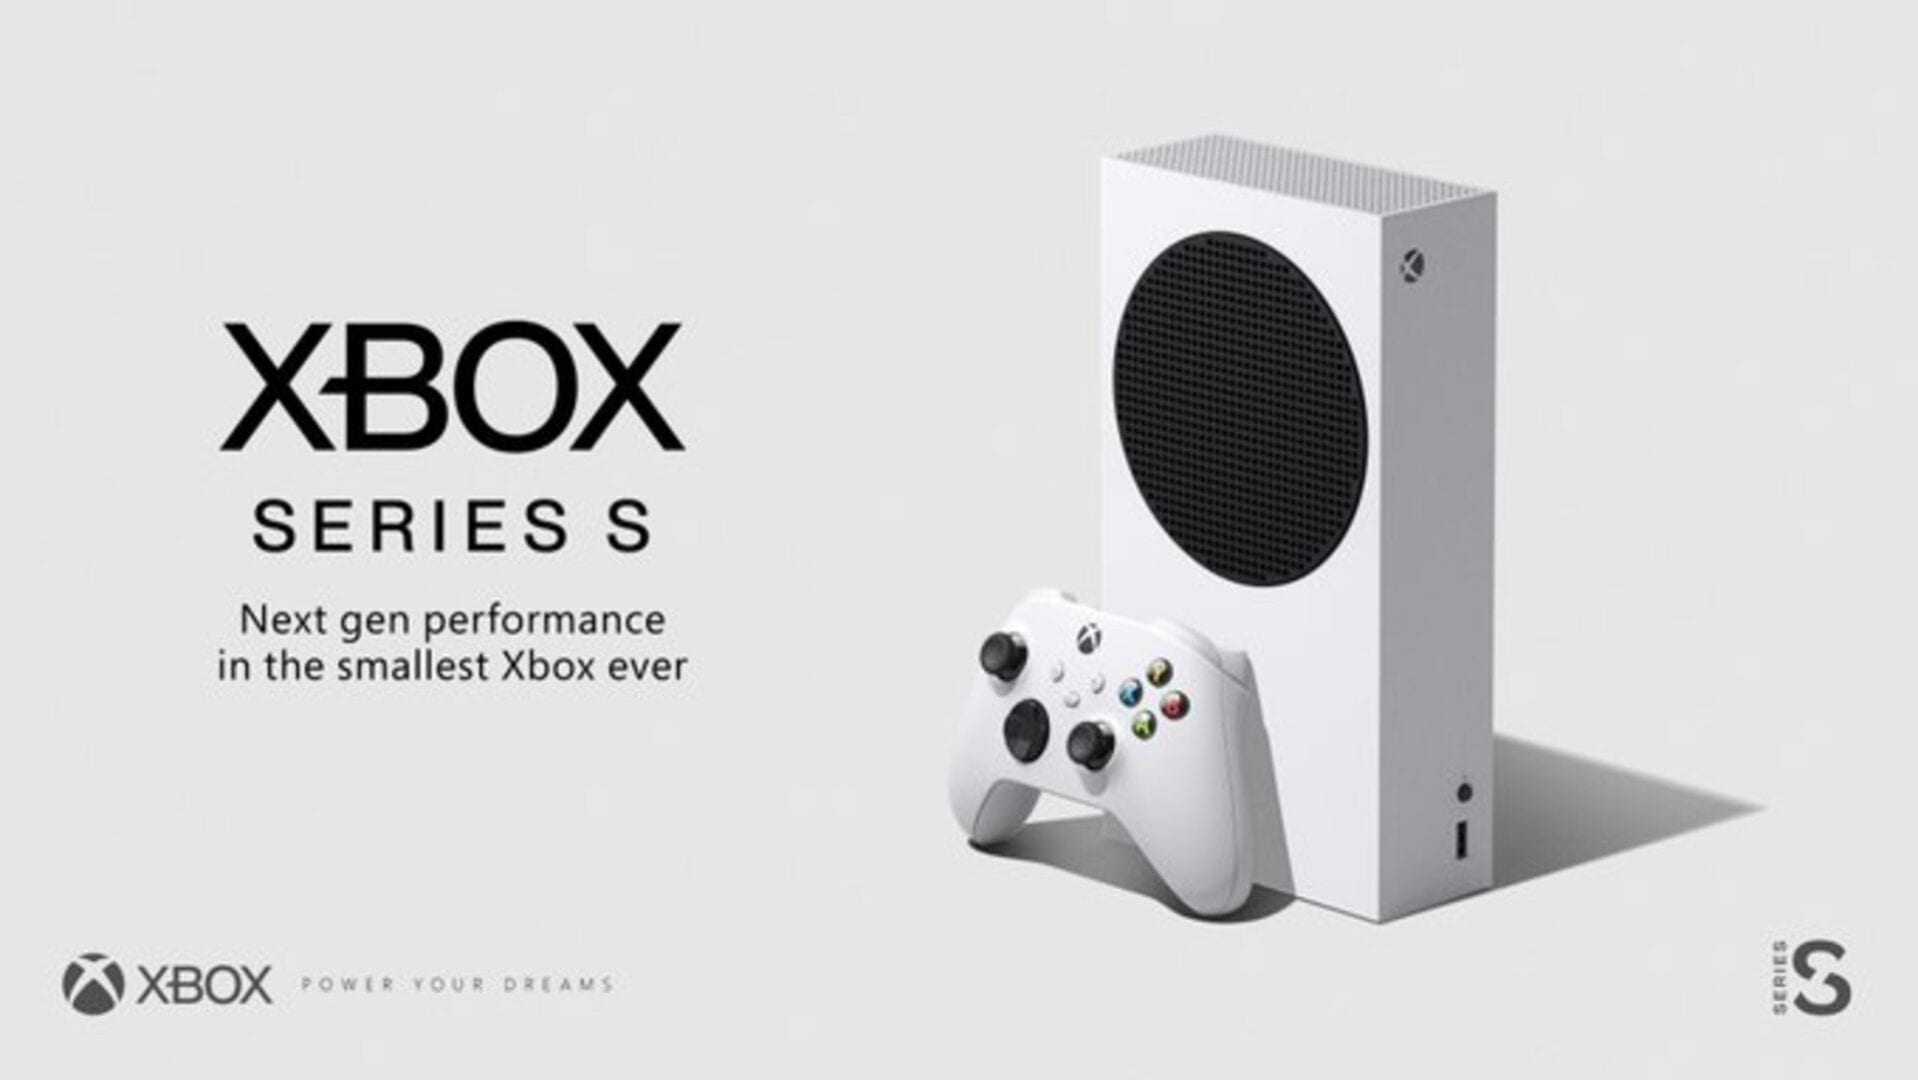 “Μέσα” στο Xbox Series S